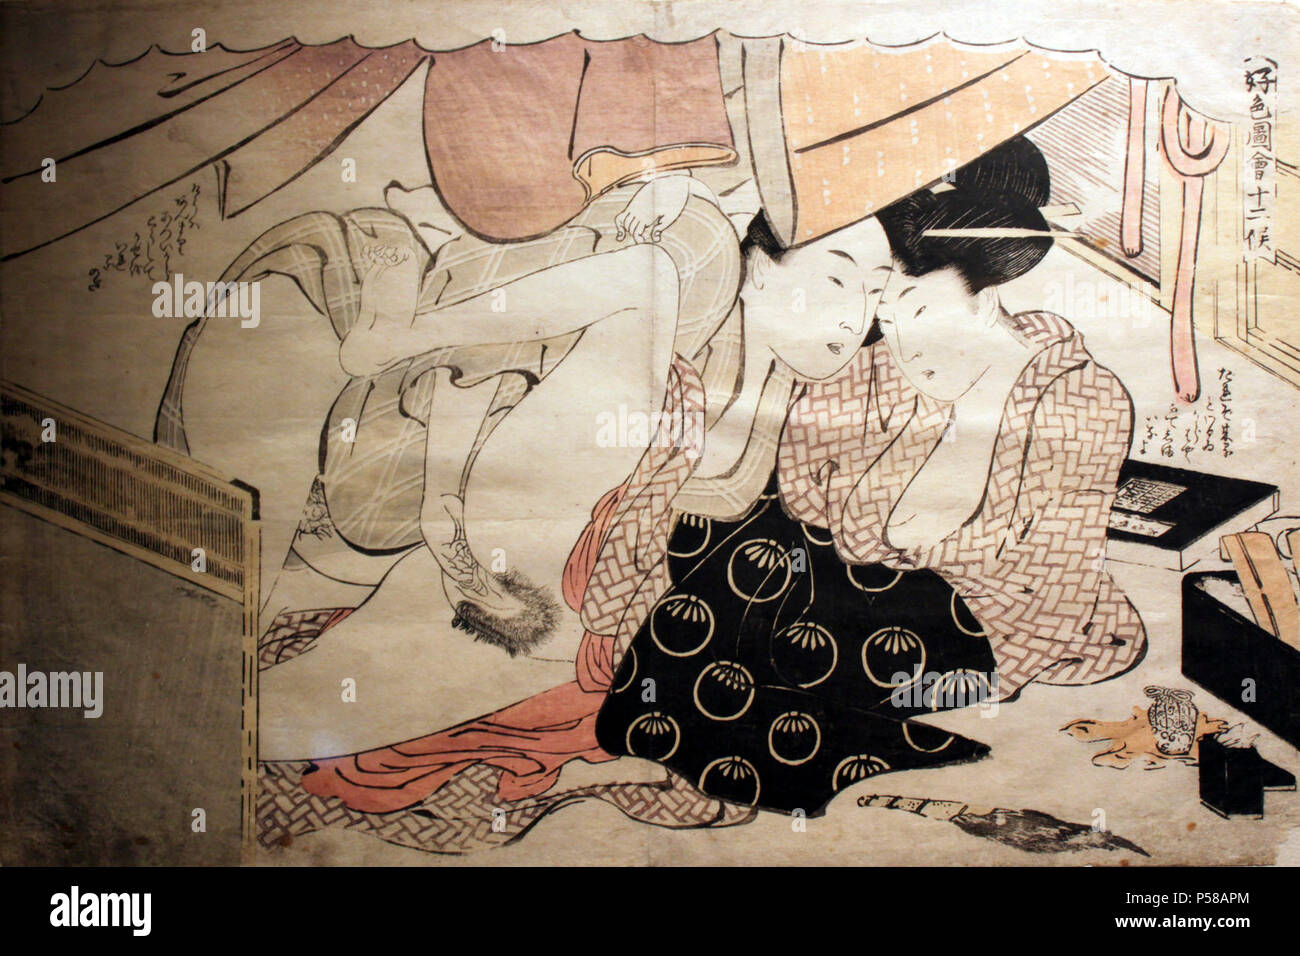 17XX Utamaro Shunga anagoria. Stock Photo